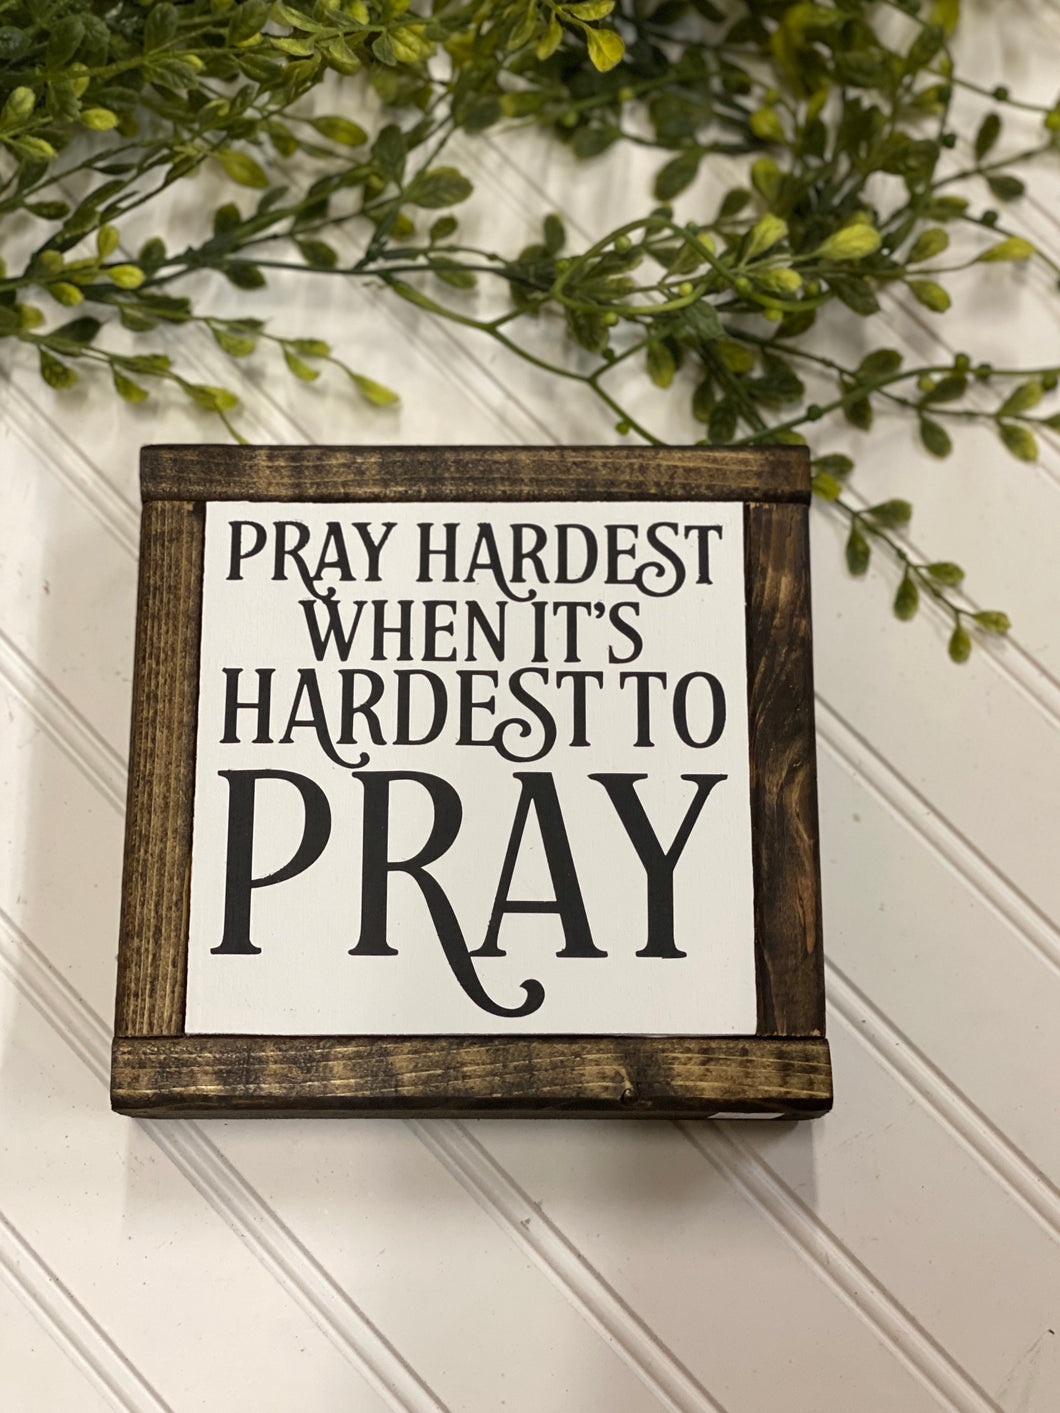 Pray hardest when it's hardest to pray